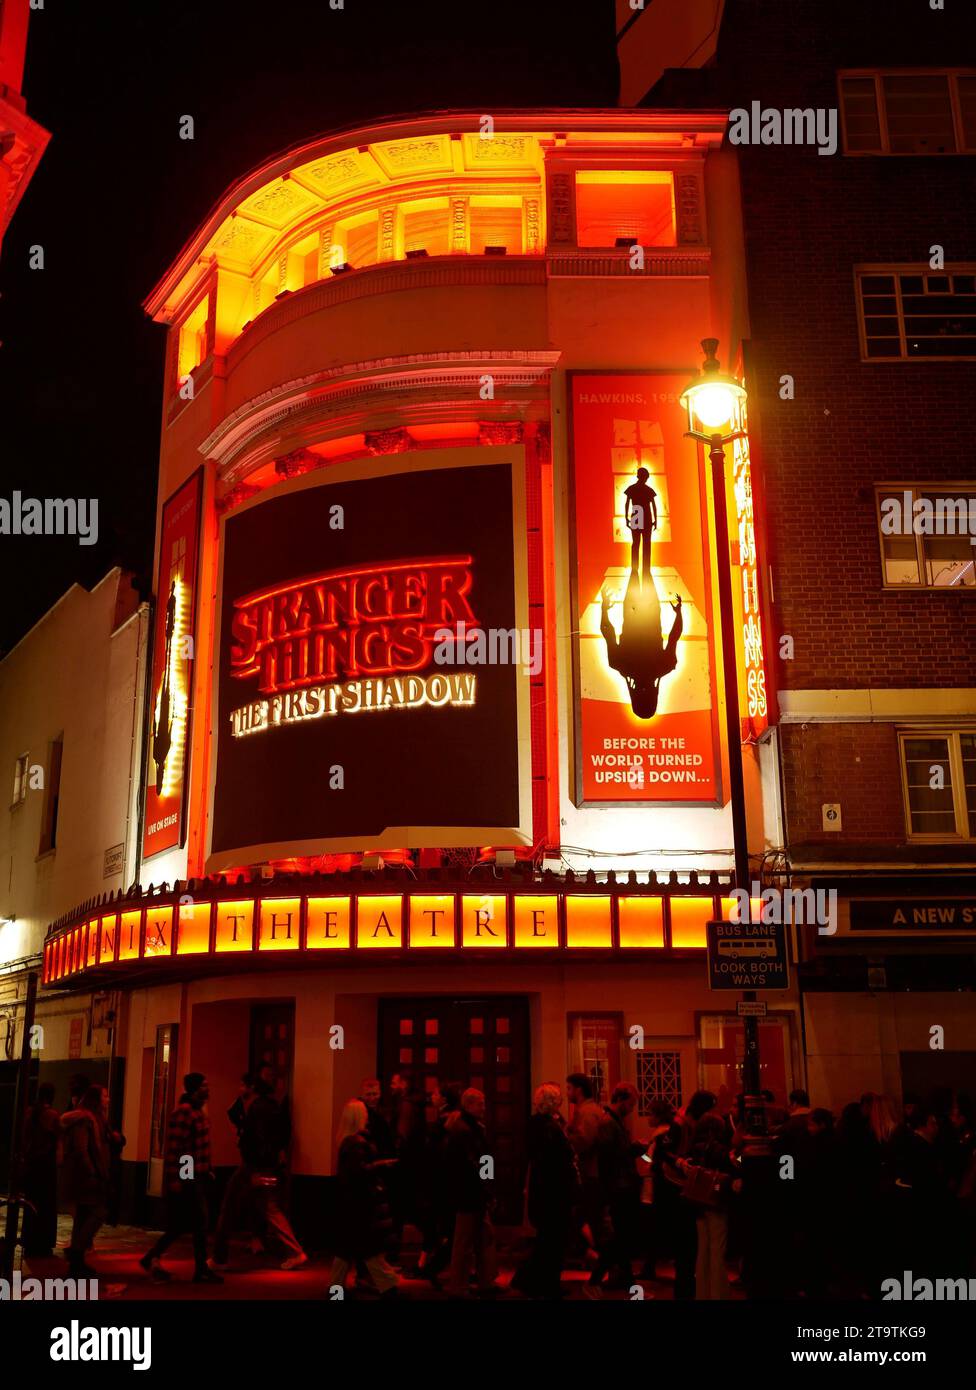 Stranger Things: The First Shadow, Aufführung im Phoenix Theatre im Londoner West End. London Großbritannien Stockfoto